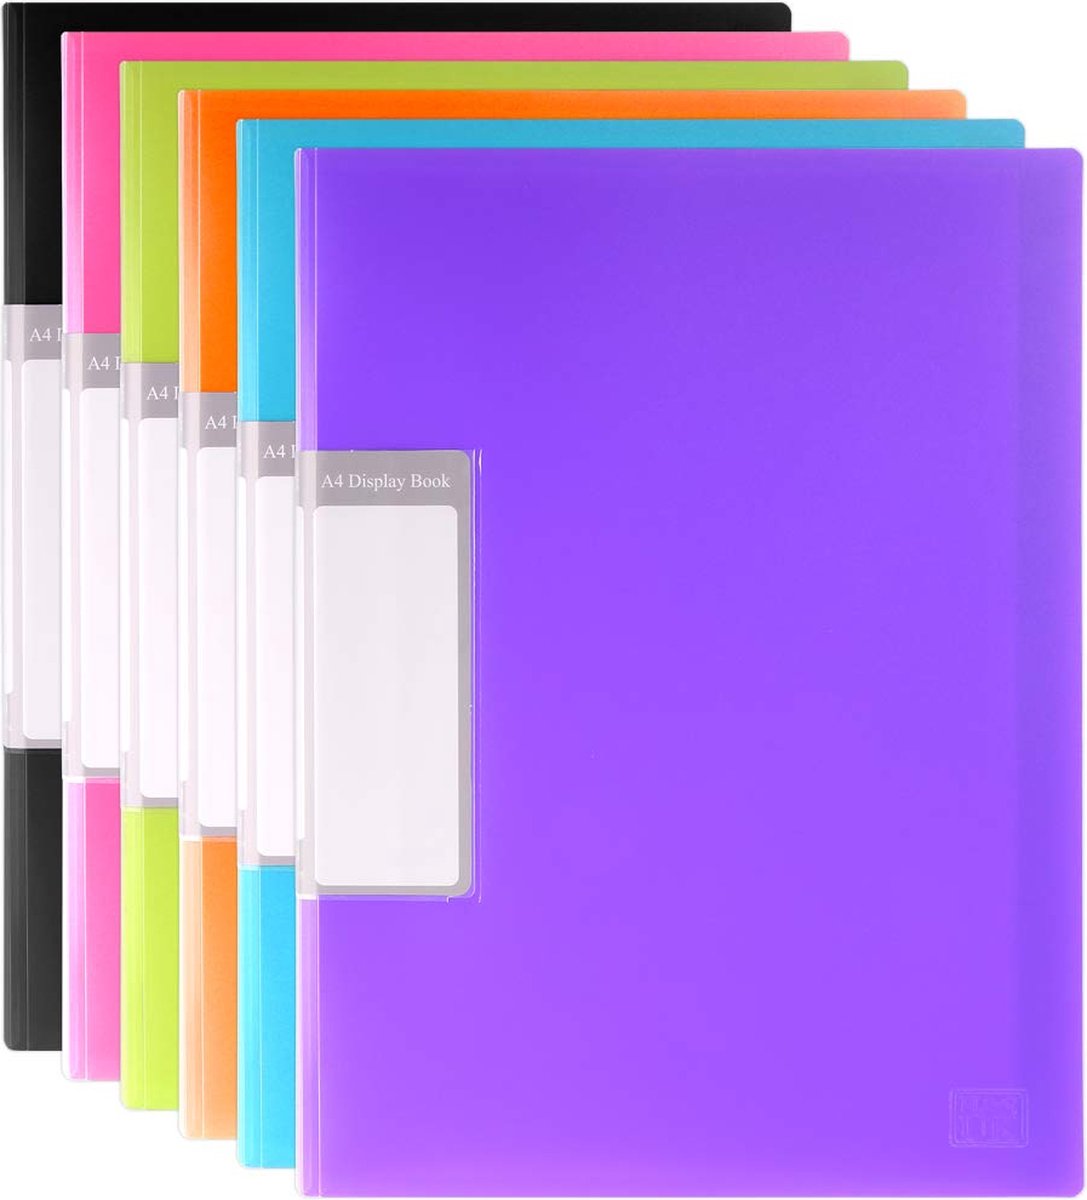 H&S A4 projectordner voor boekpresentaties (30 vakken, 6 eenheden) verpakking met 6 (A4, 30 vakken) zwart, blauw, paars, geel, oranje